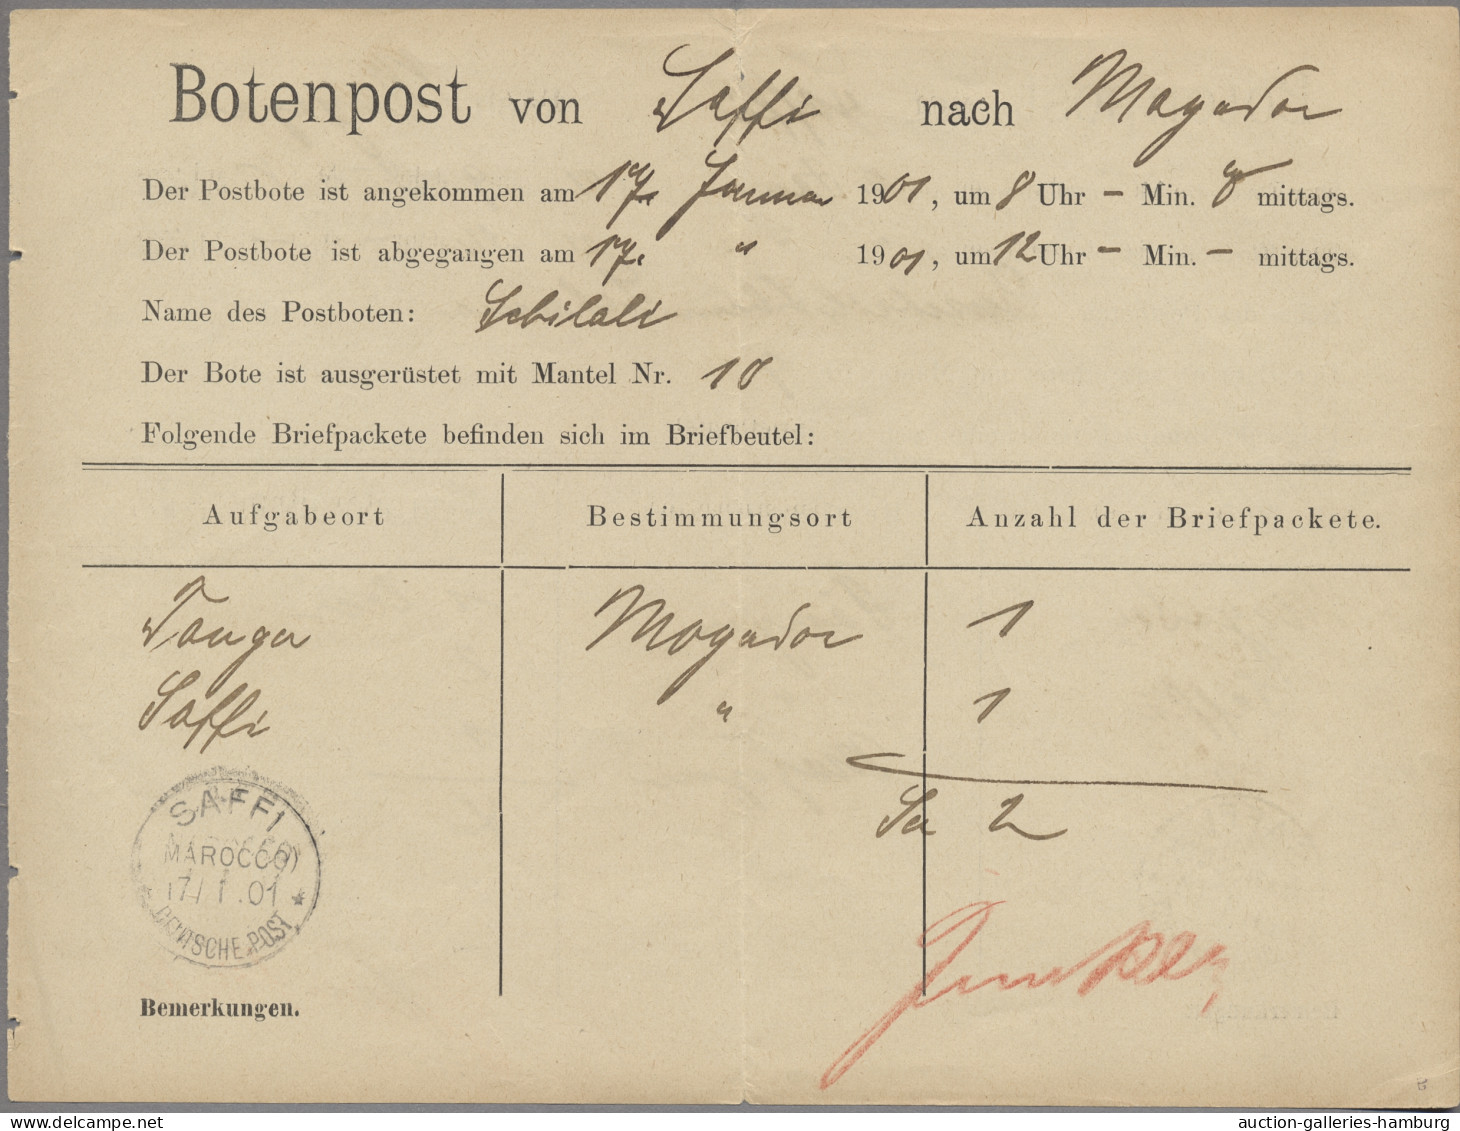 Deutsche Post In Marokko - Besonderheiten: 1901, BOTENPOST, Zweiseitig Gedruckte - Morocco (offices)